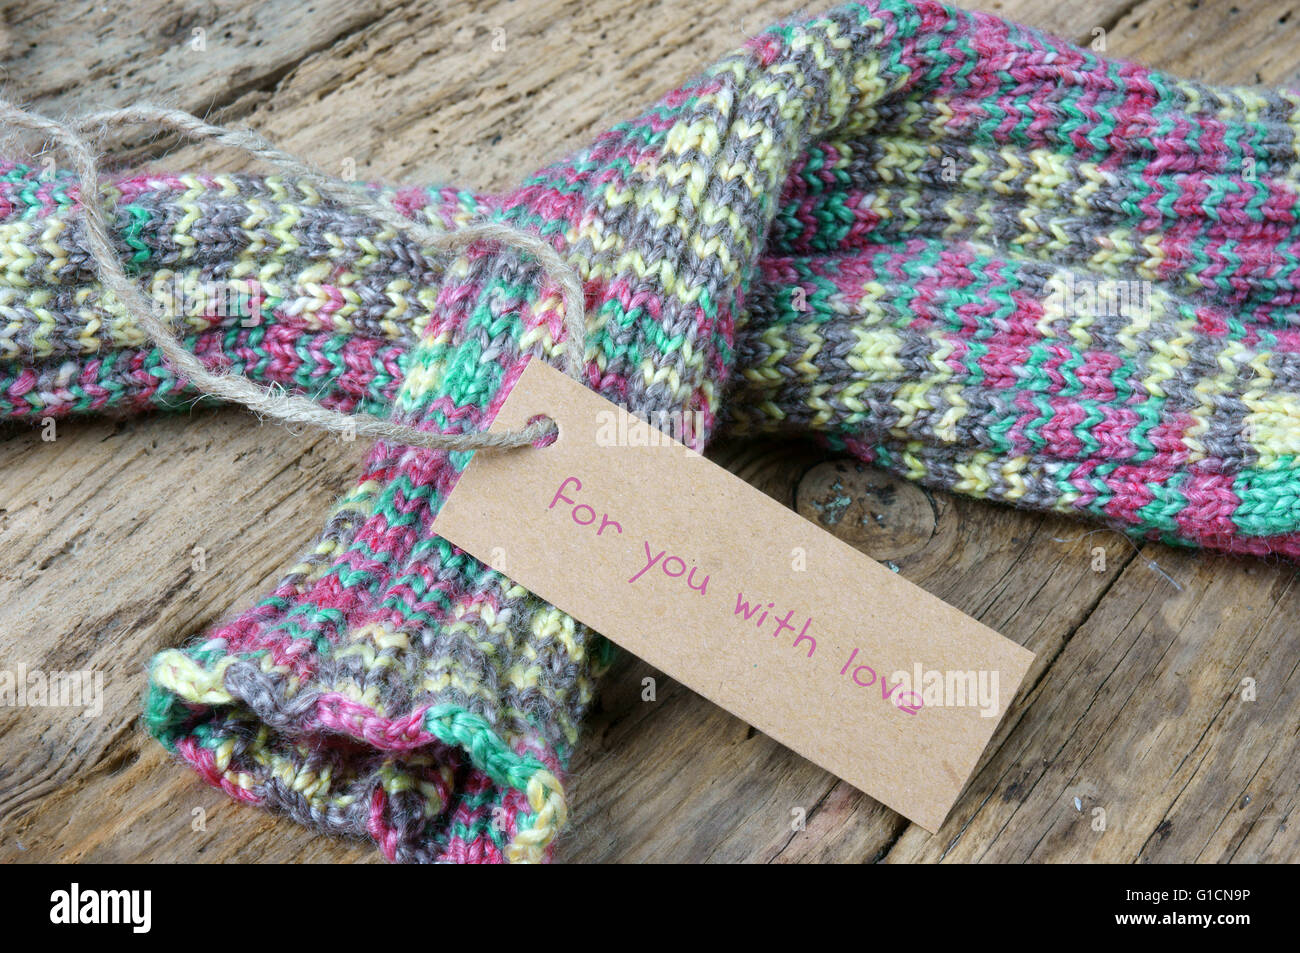 Frauen Hand stricken Wolle Handschuh zu Weihnachtsgeschenk, ein besonderes Geschenk für kalte Winter, bunte Wolle Ball, hölzernen Hintergrund Stockfoto